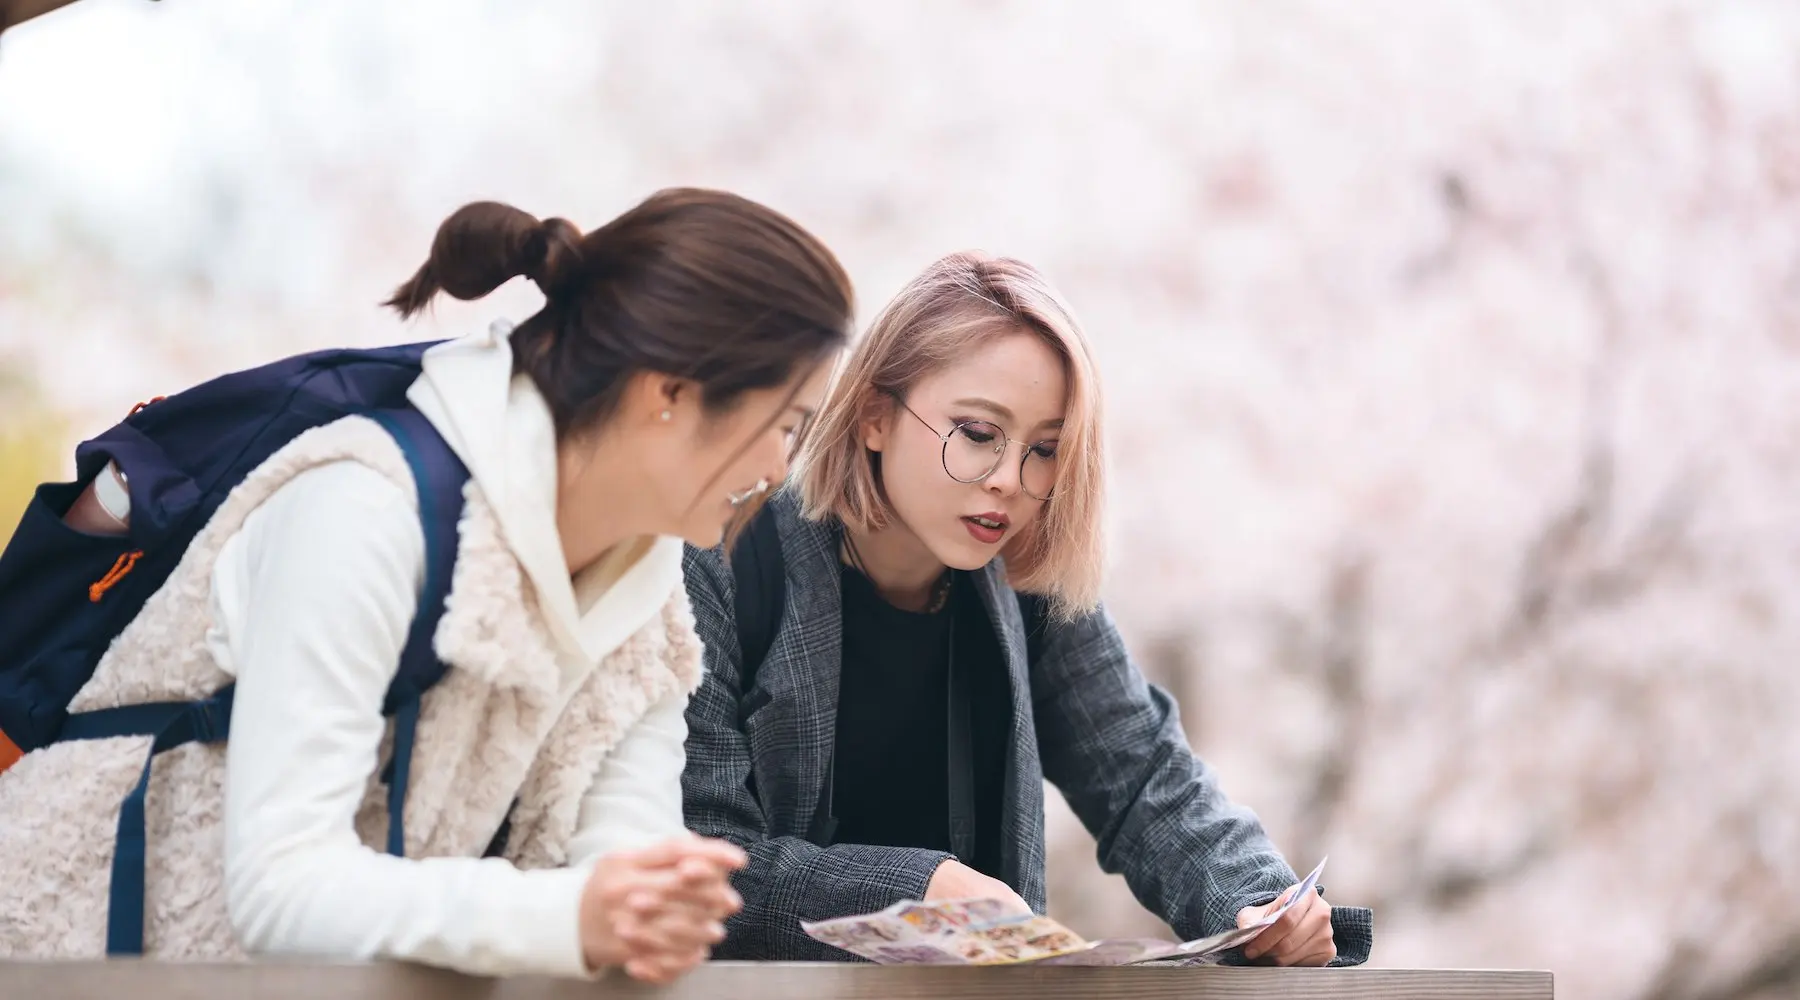 Dois amigos olhando para um mapa no Japão, com flores de cerejeira atrás deles.